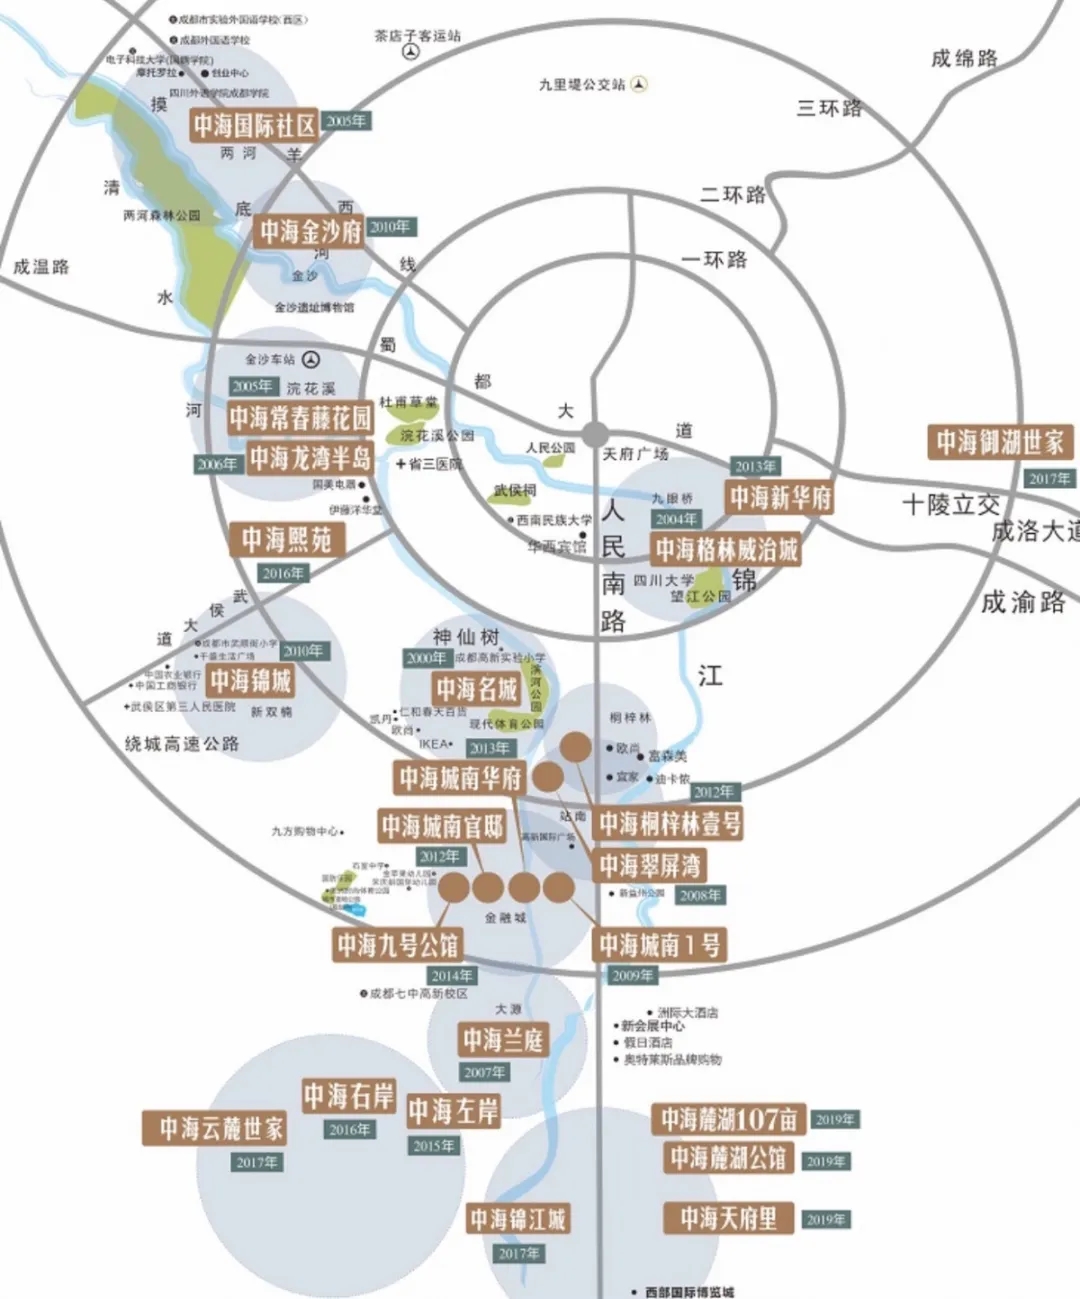 成渝贵环线高铁10日开行 打开新一轮区域经济红利期-中国网地产